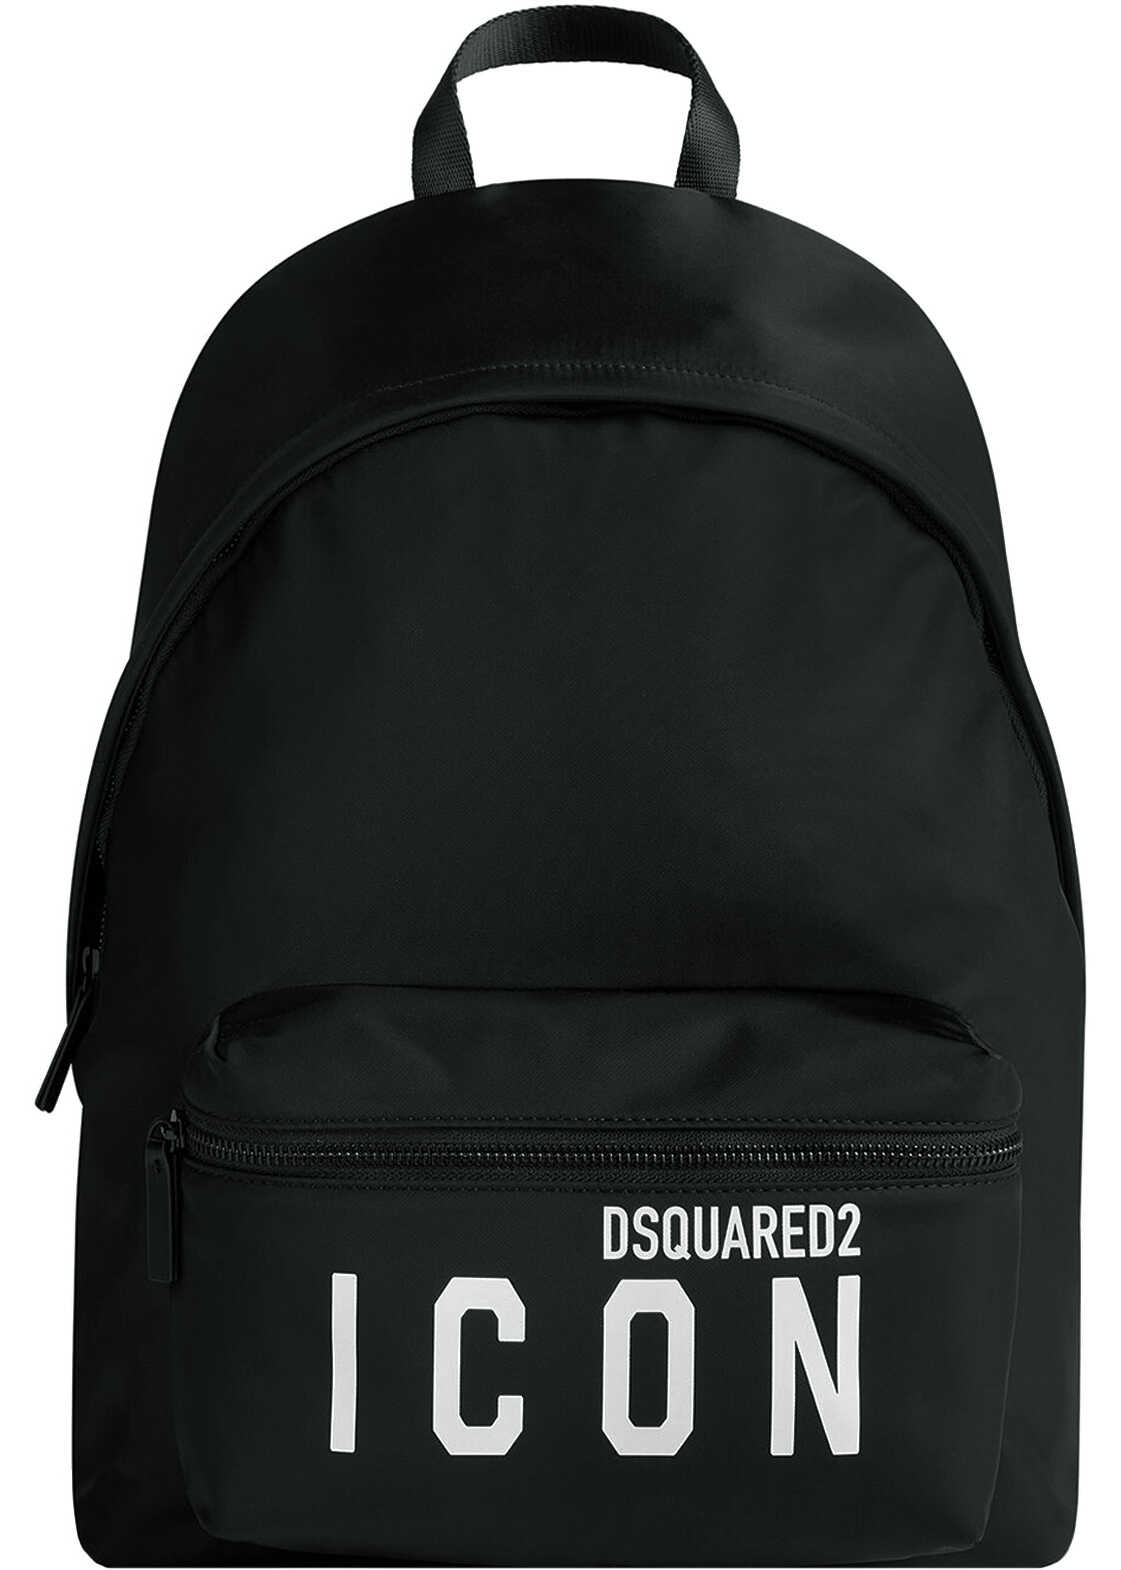 DSQUARED2 Backpack Black